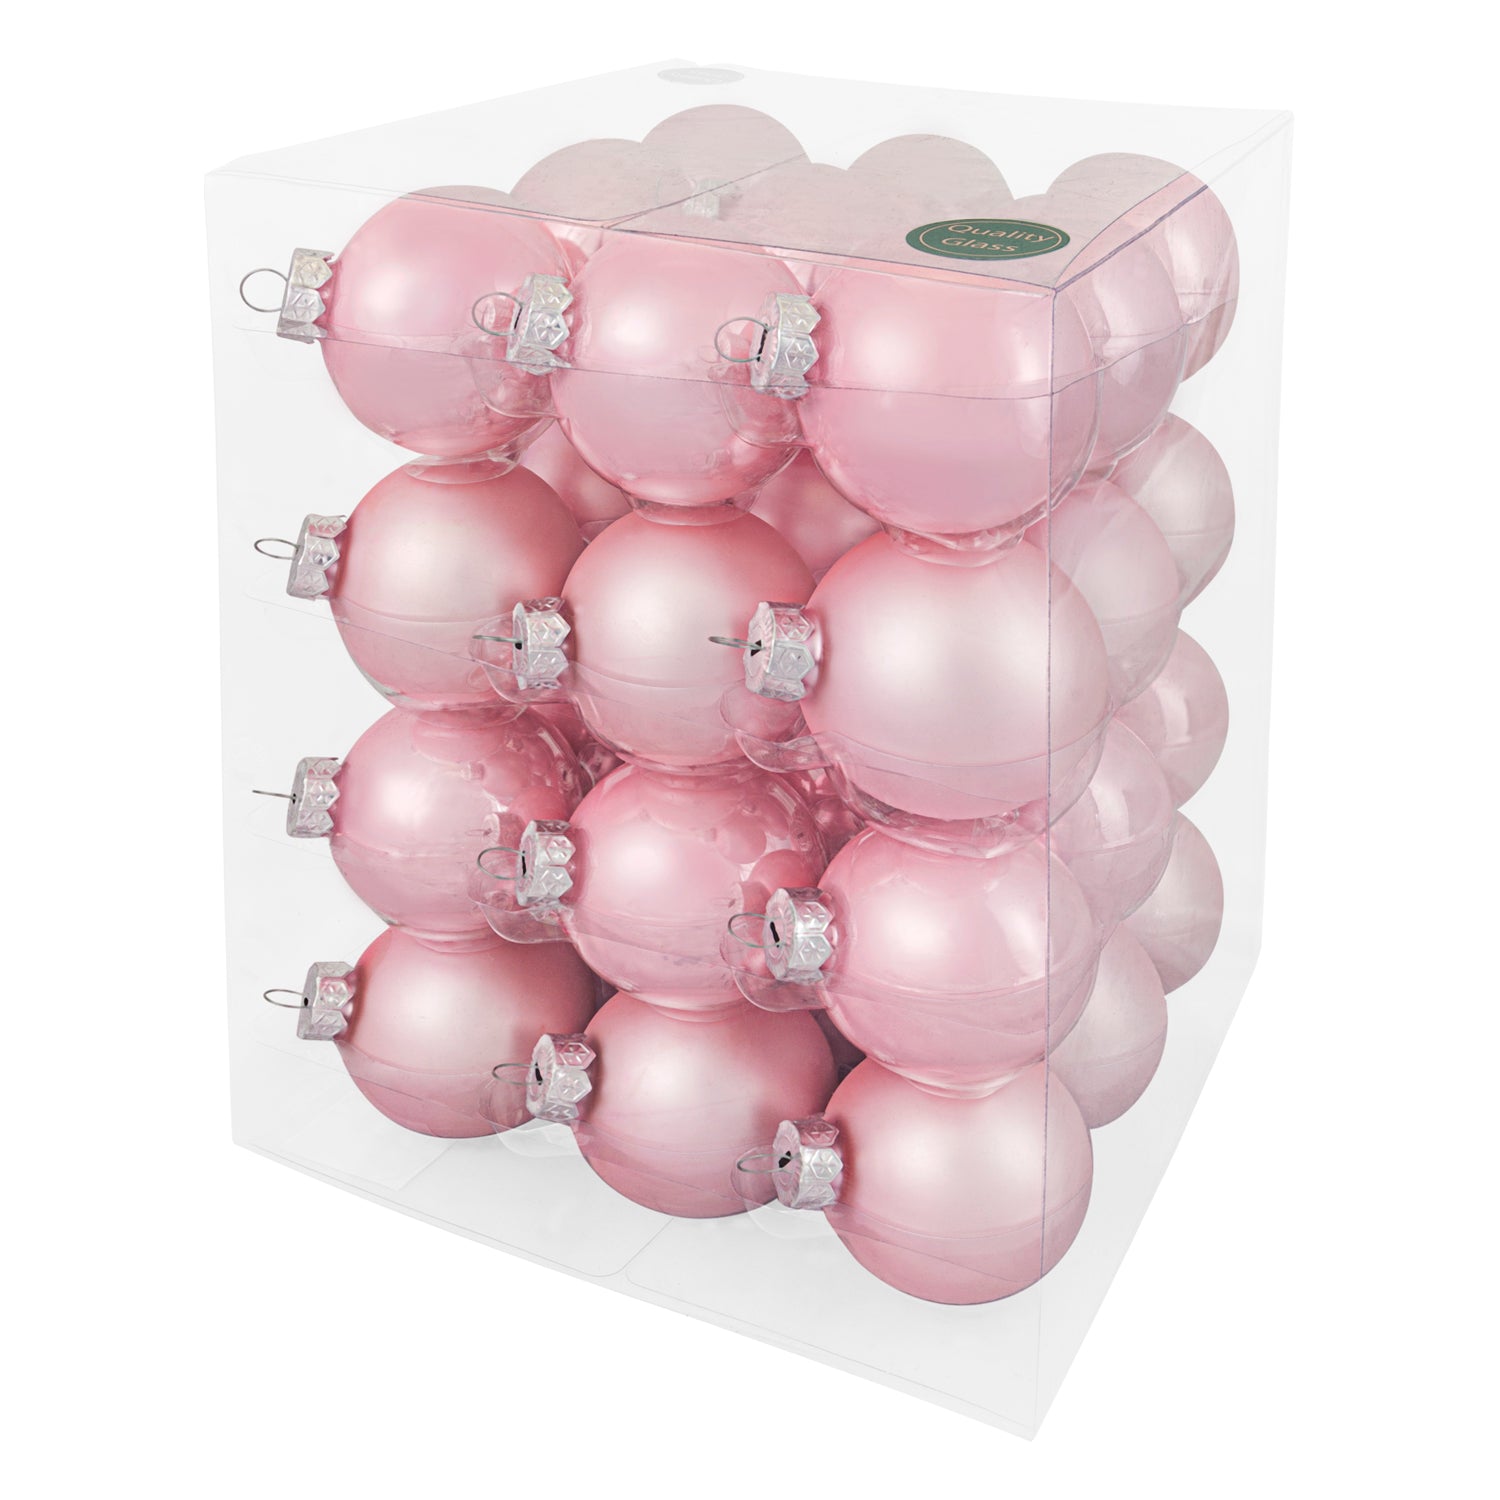 Decosy® Powder Pink Kerstballen Glas 52 stuks - 36x 60mm en 16x 80mm